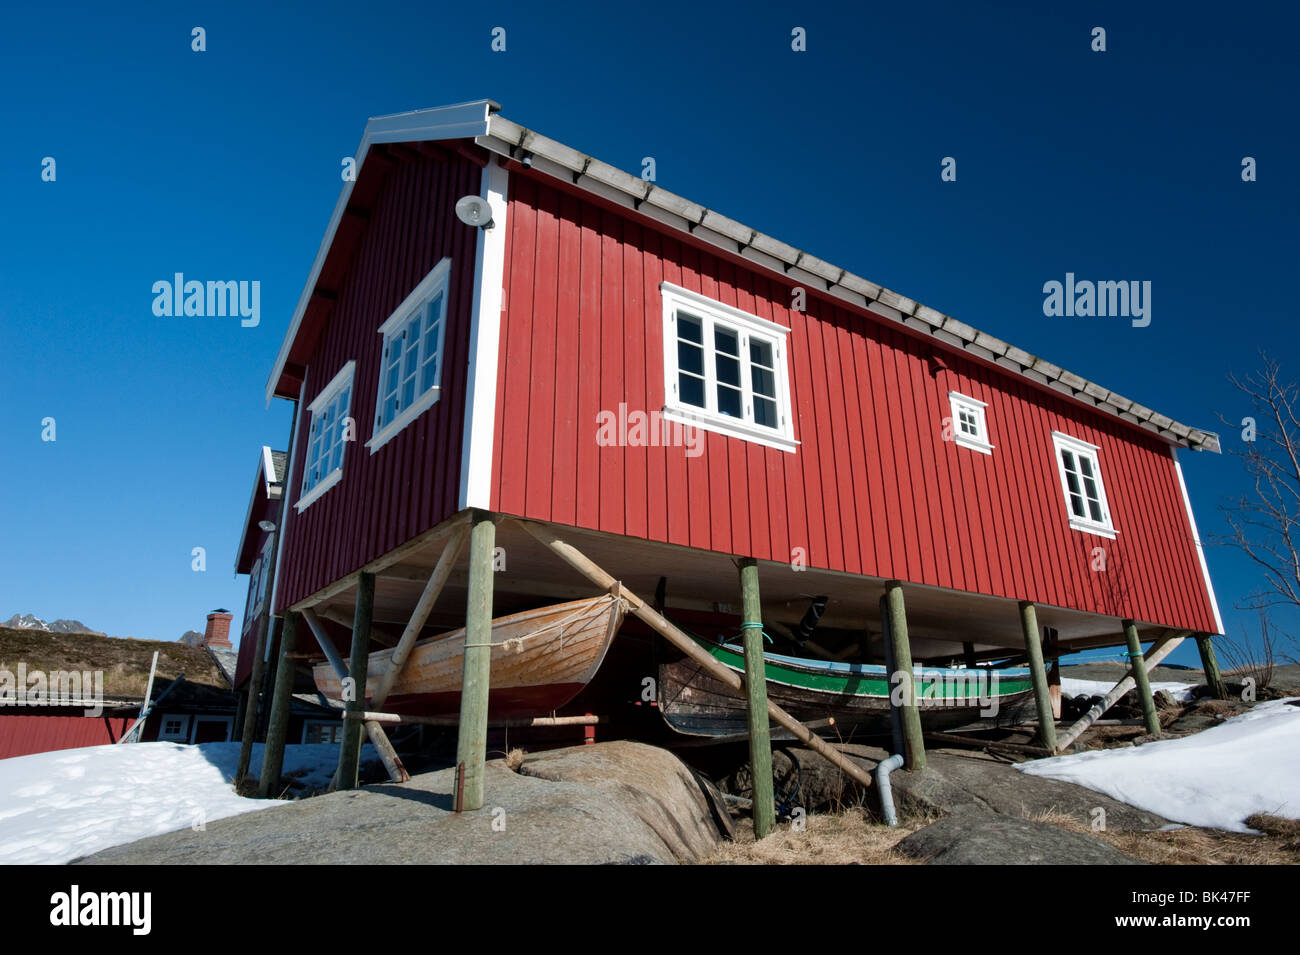 Traditionellen roten Holz Rorbu Fischerhütte mit Angelboote/Fischerboote unten im Dorf der Reine auf Lofoten in Norwegen gespeichert Stockfoto